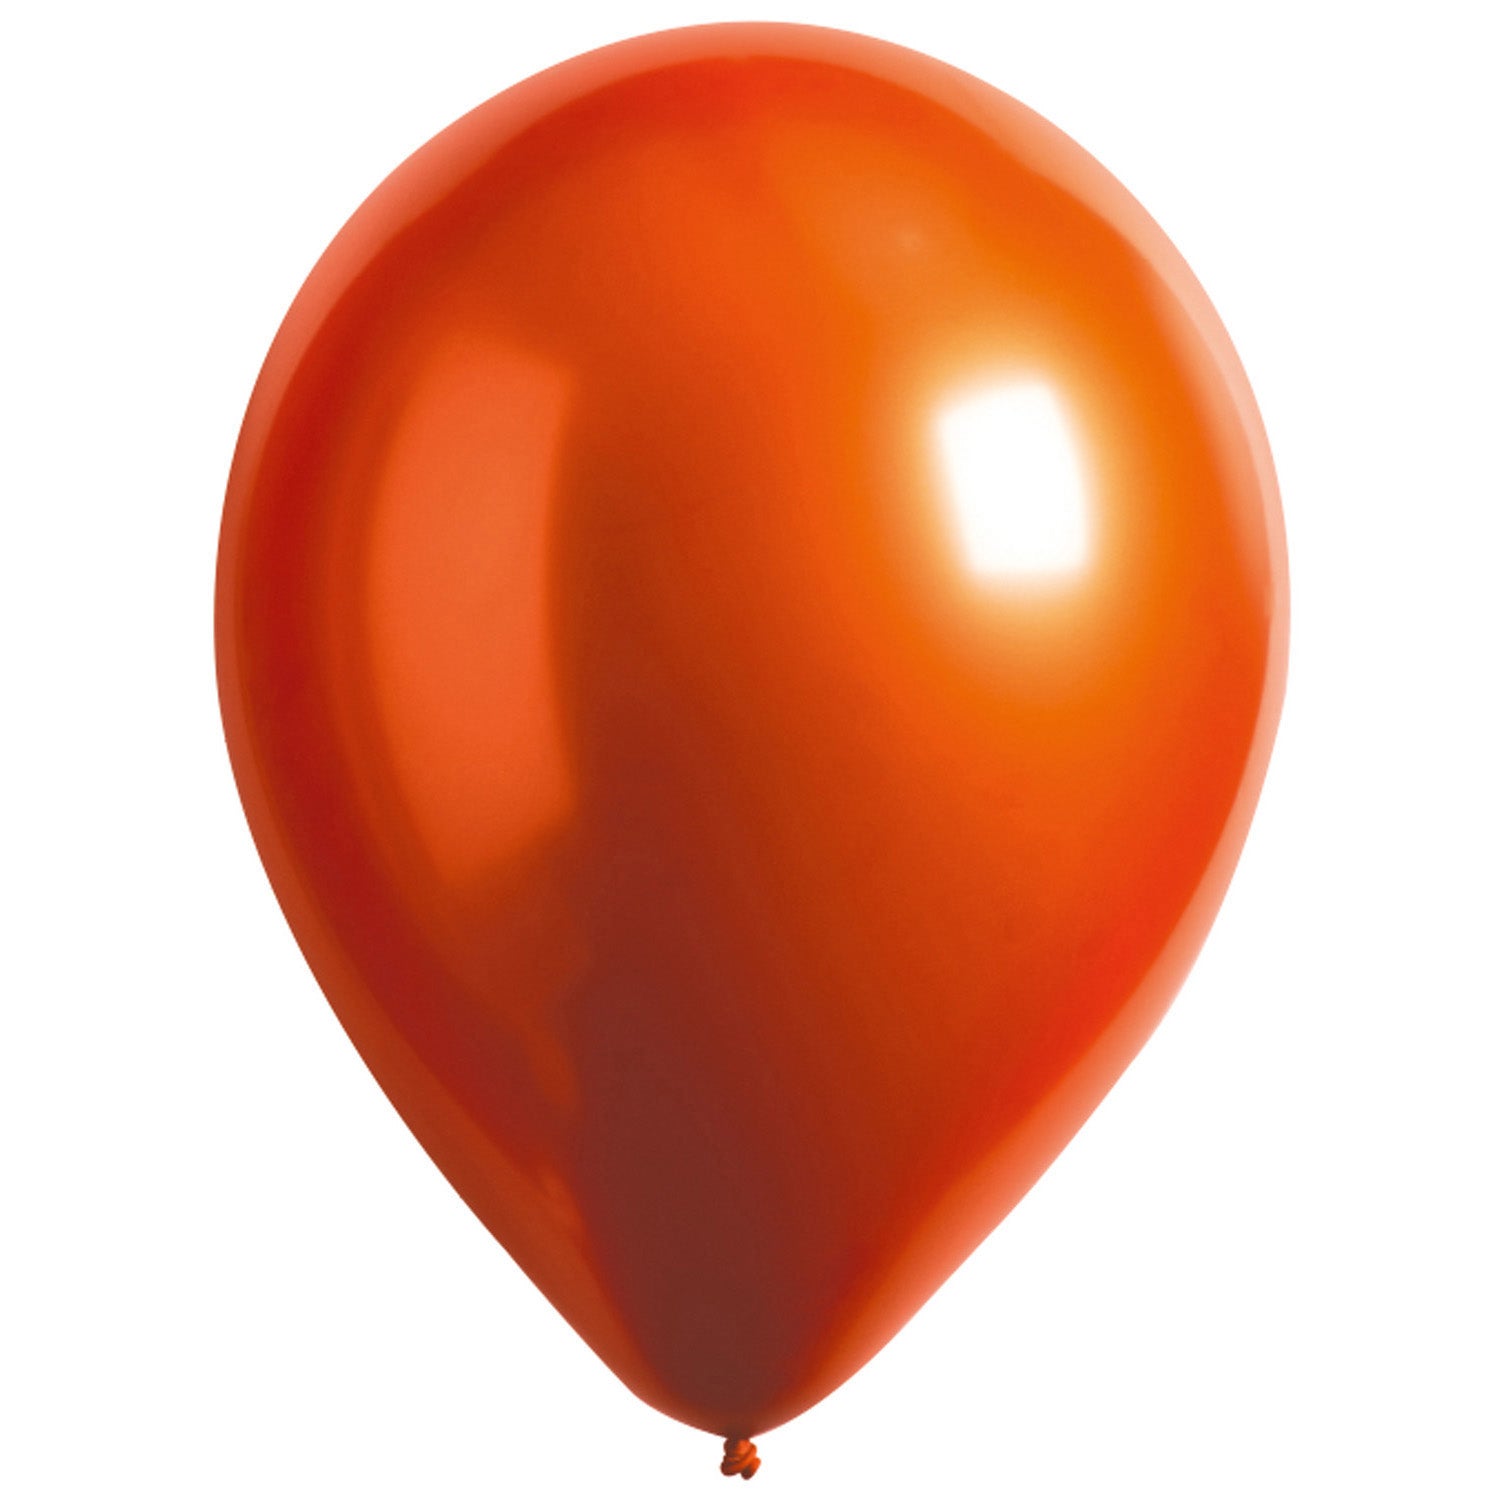 Chromed balloon amber 1pc